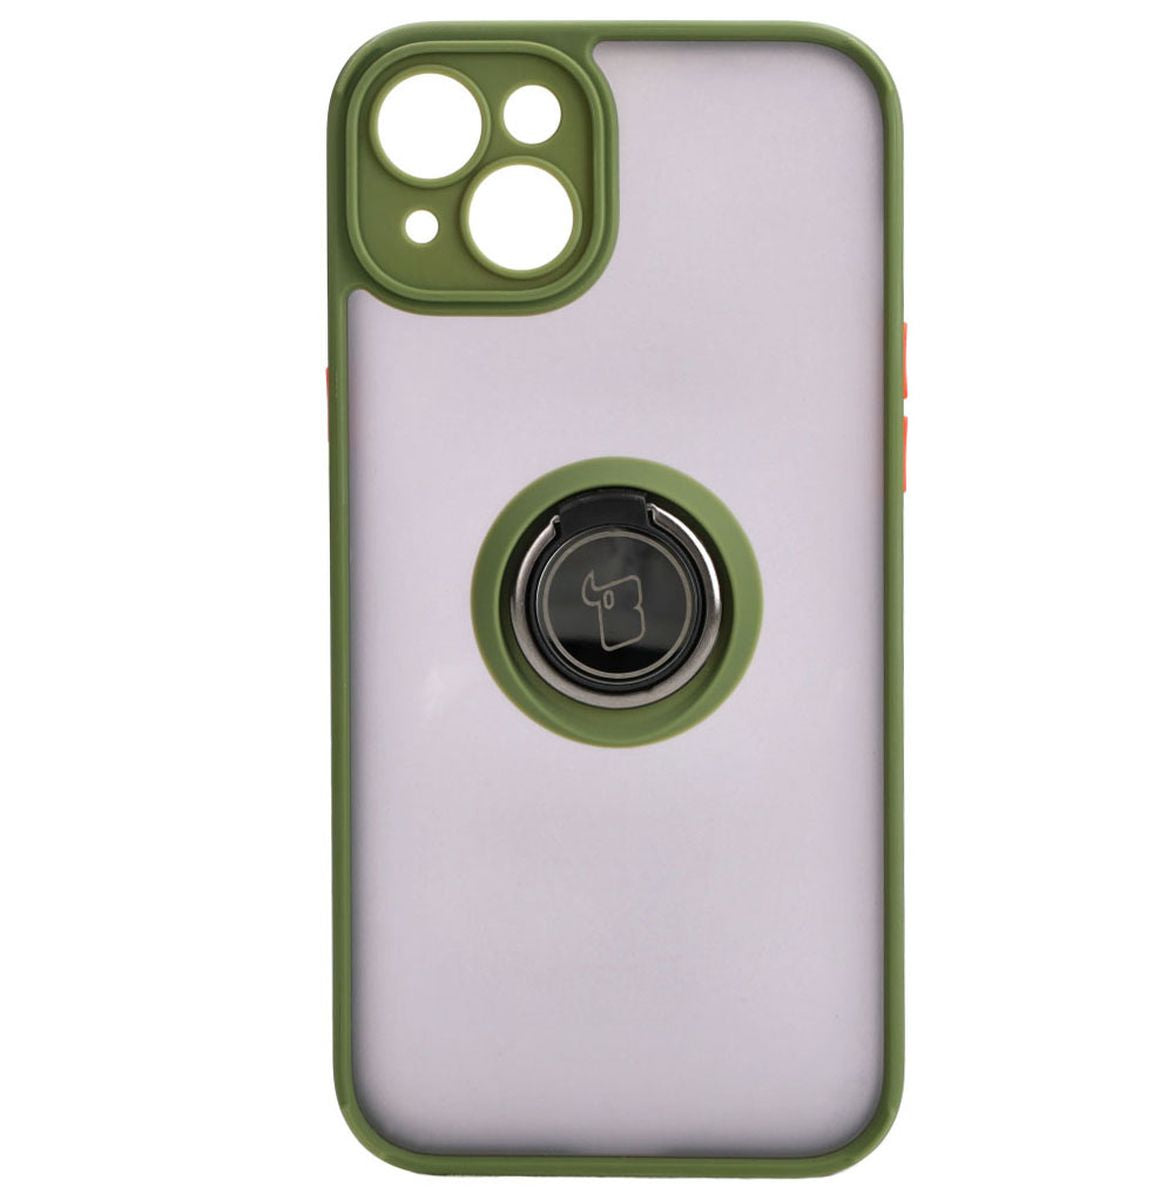 Handyhülle mit Fingergriff für iPhone 15 Plus, Bizon Case Hybrid Ring, getönt mit grünem Rahmen